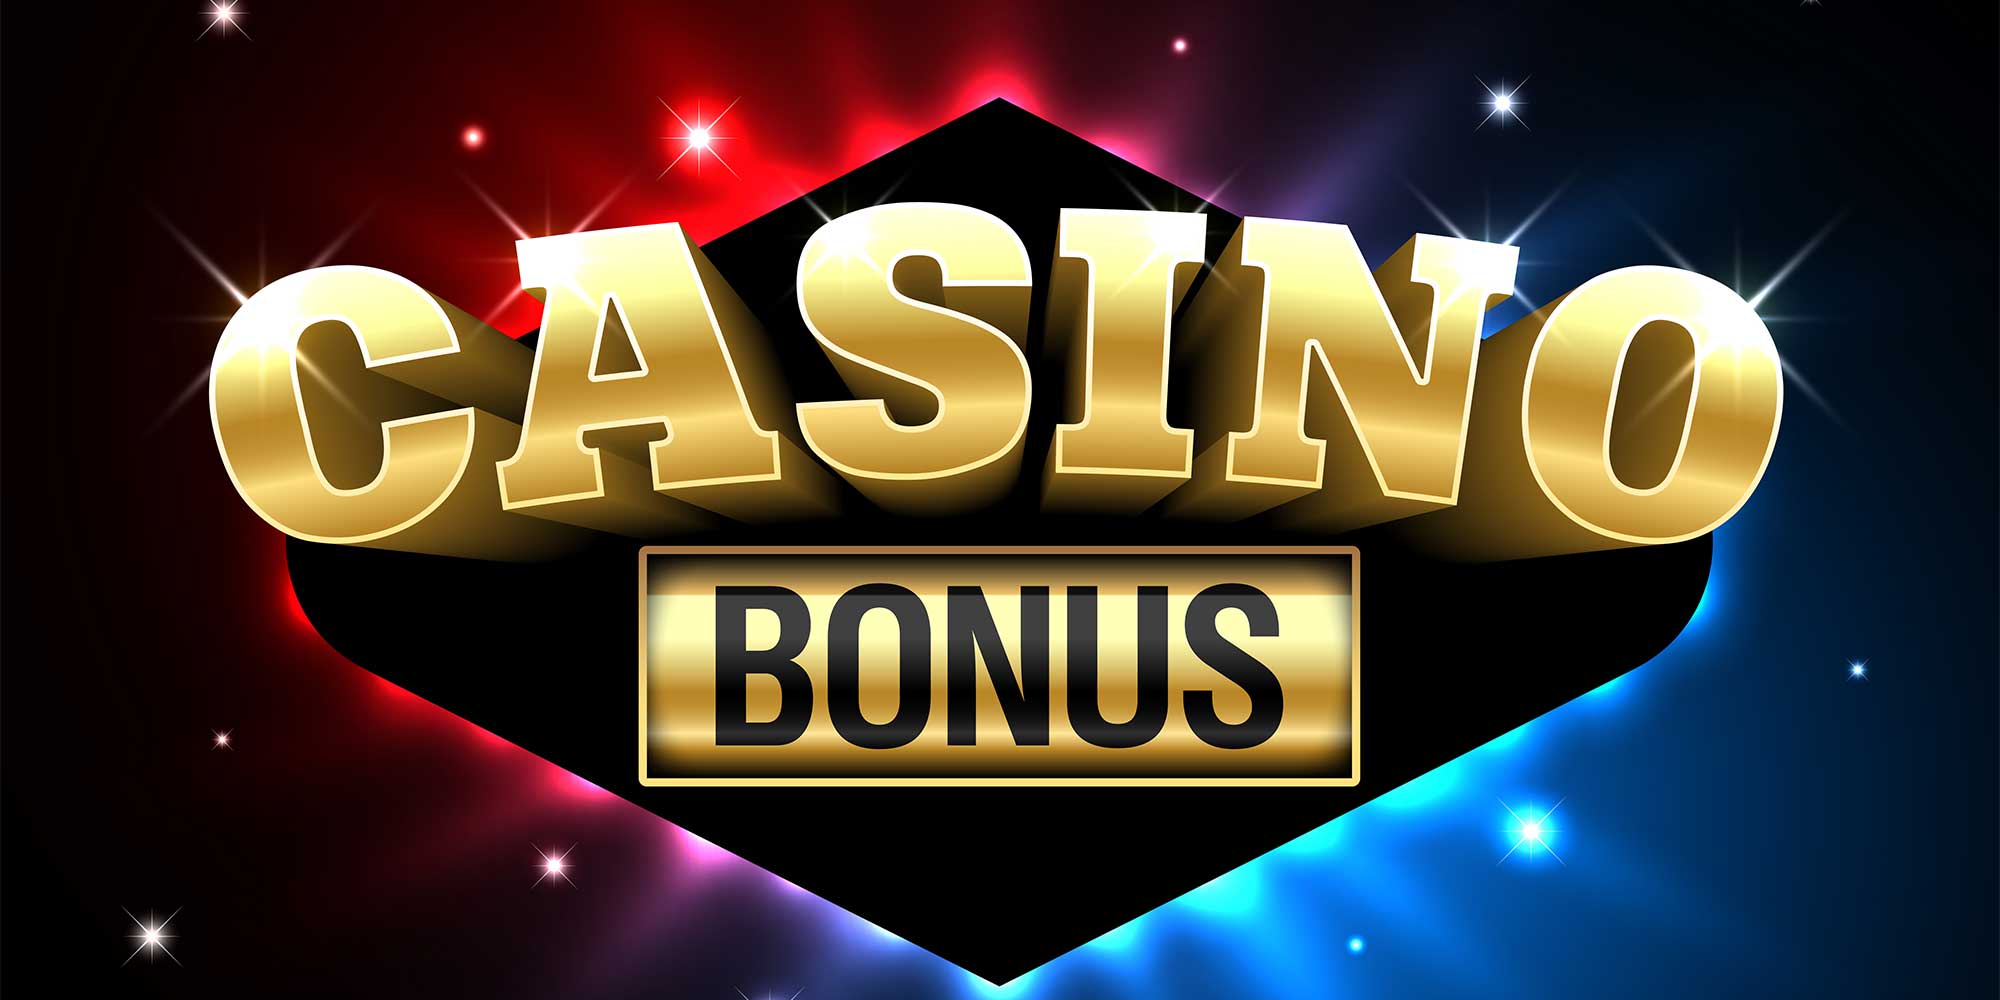 Sticky casino online bonus онлайн казино с реальными выплатами отзывы